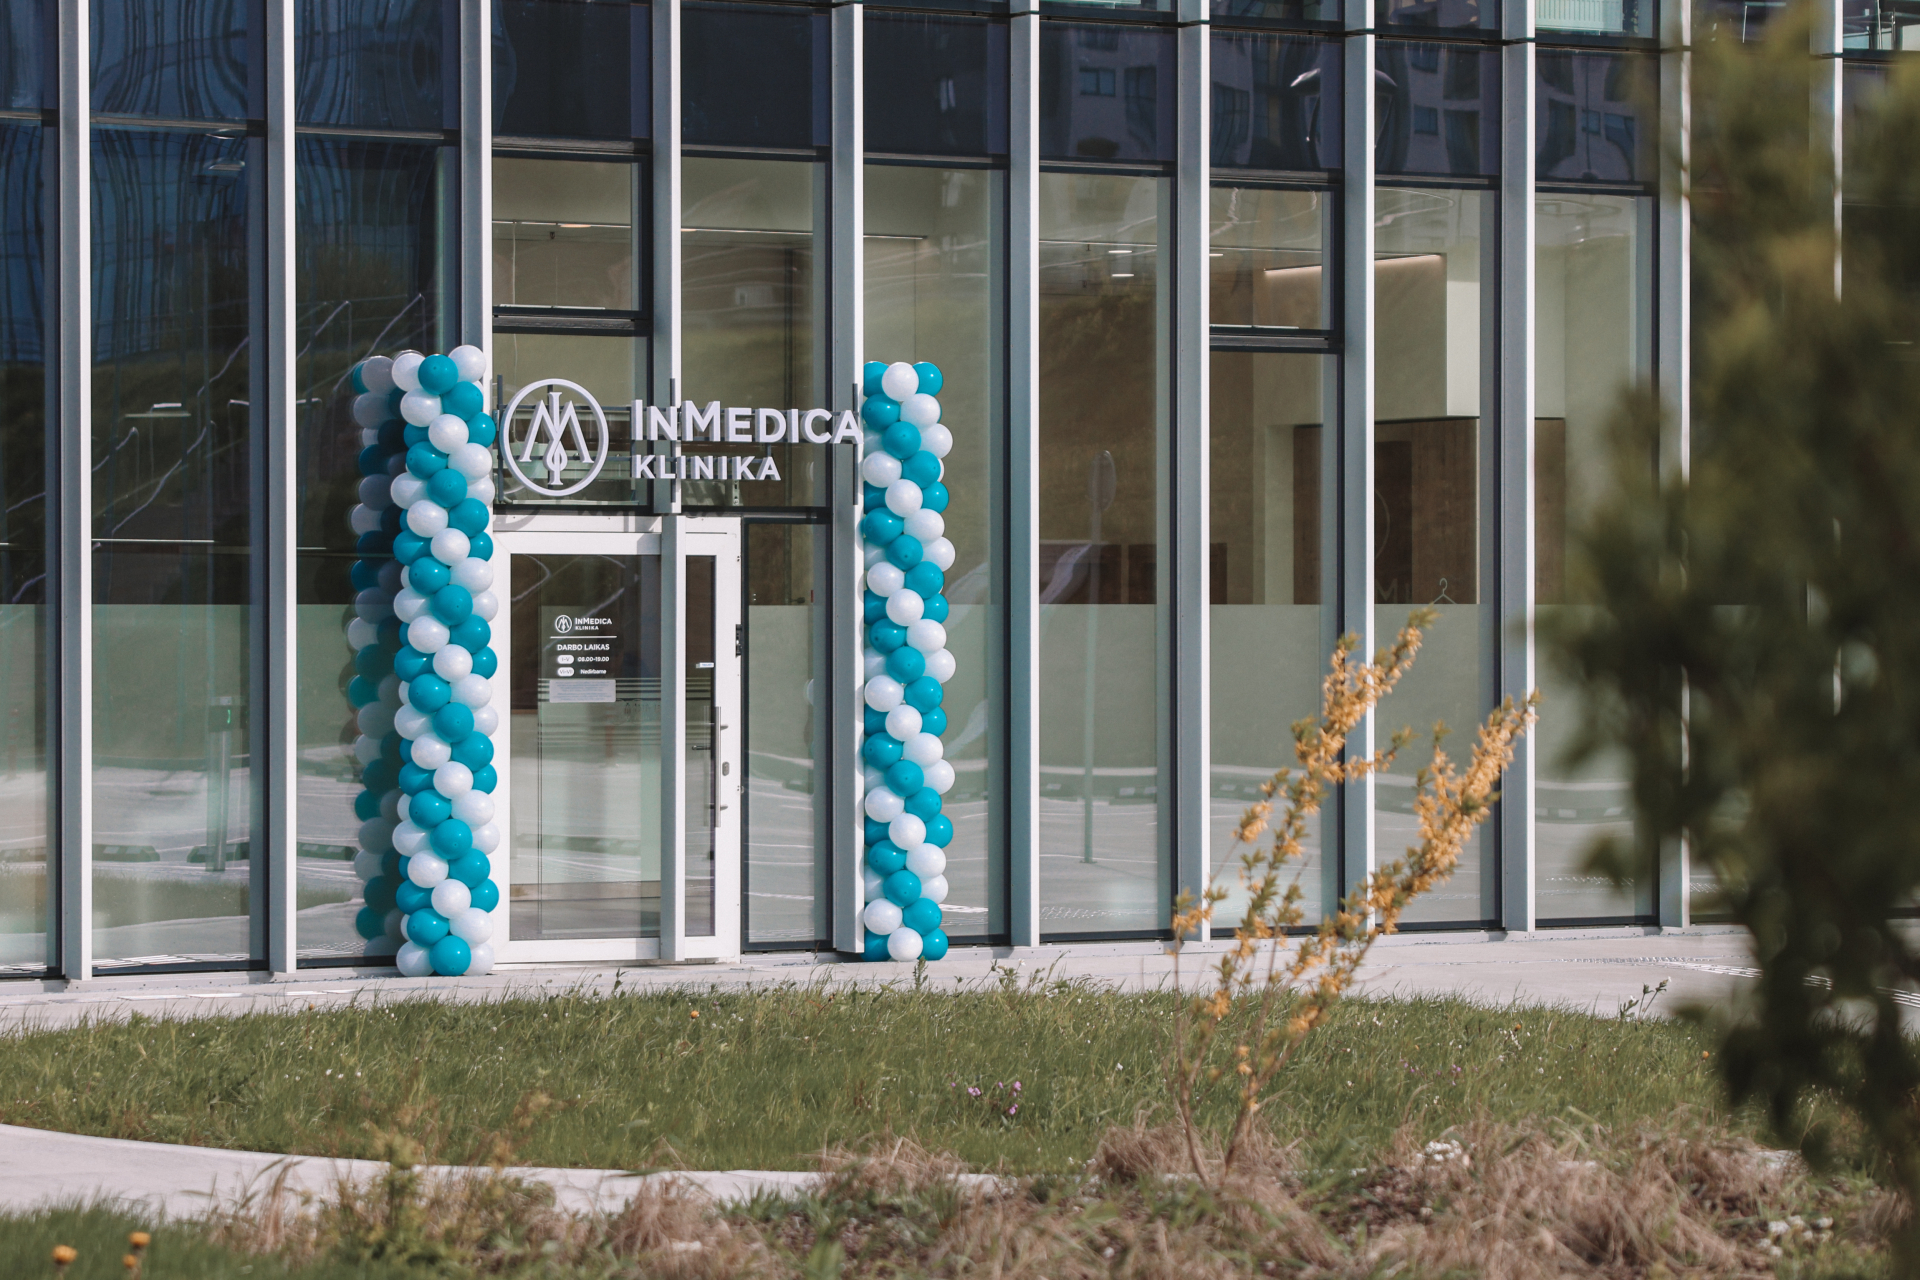 Atvėrėme naujos „InMedica“ klinikos duris Vilniuje, Eitminų g. 3